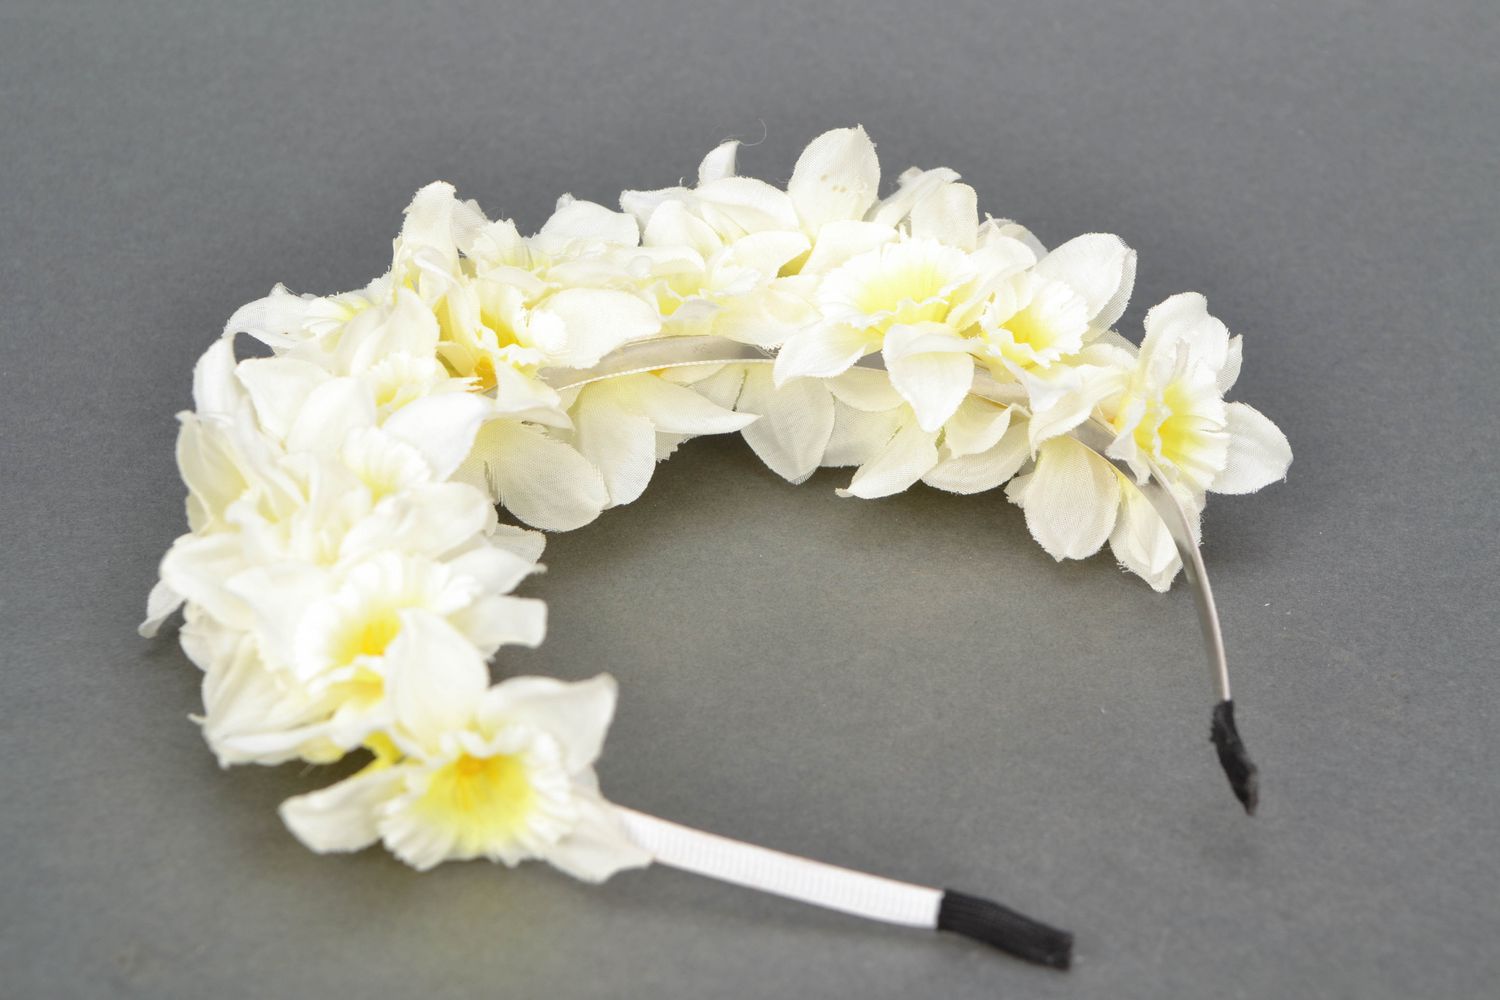 Cerceau cheveux aux fleurs blanches Narcisses photo 4